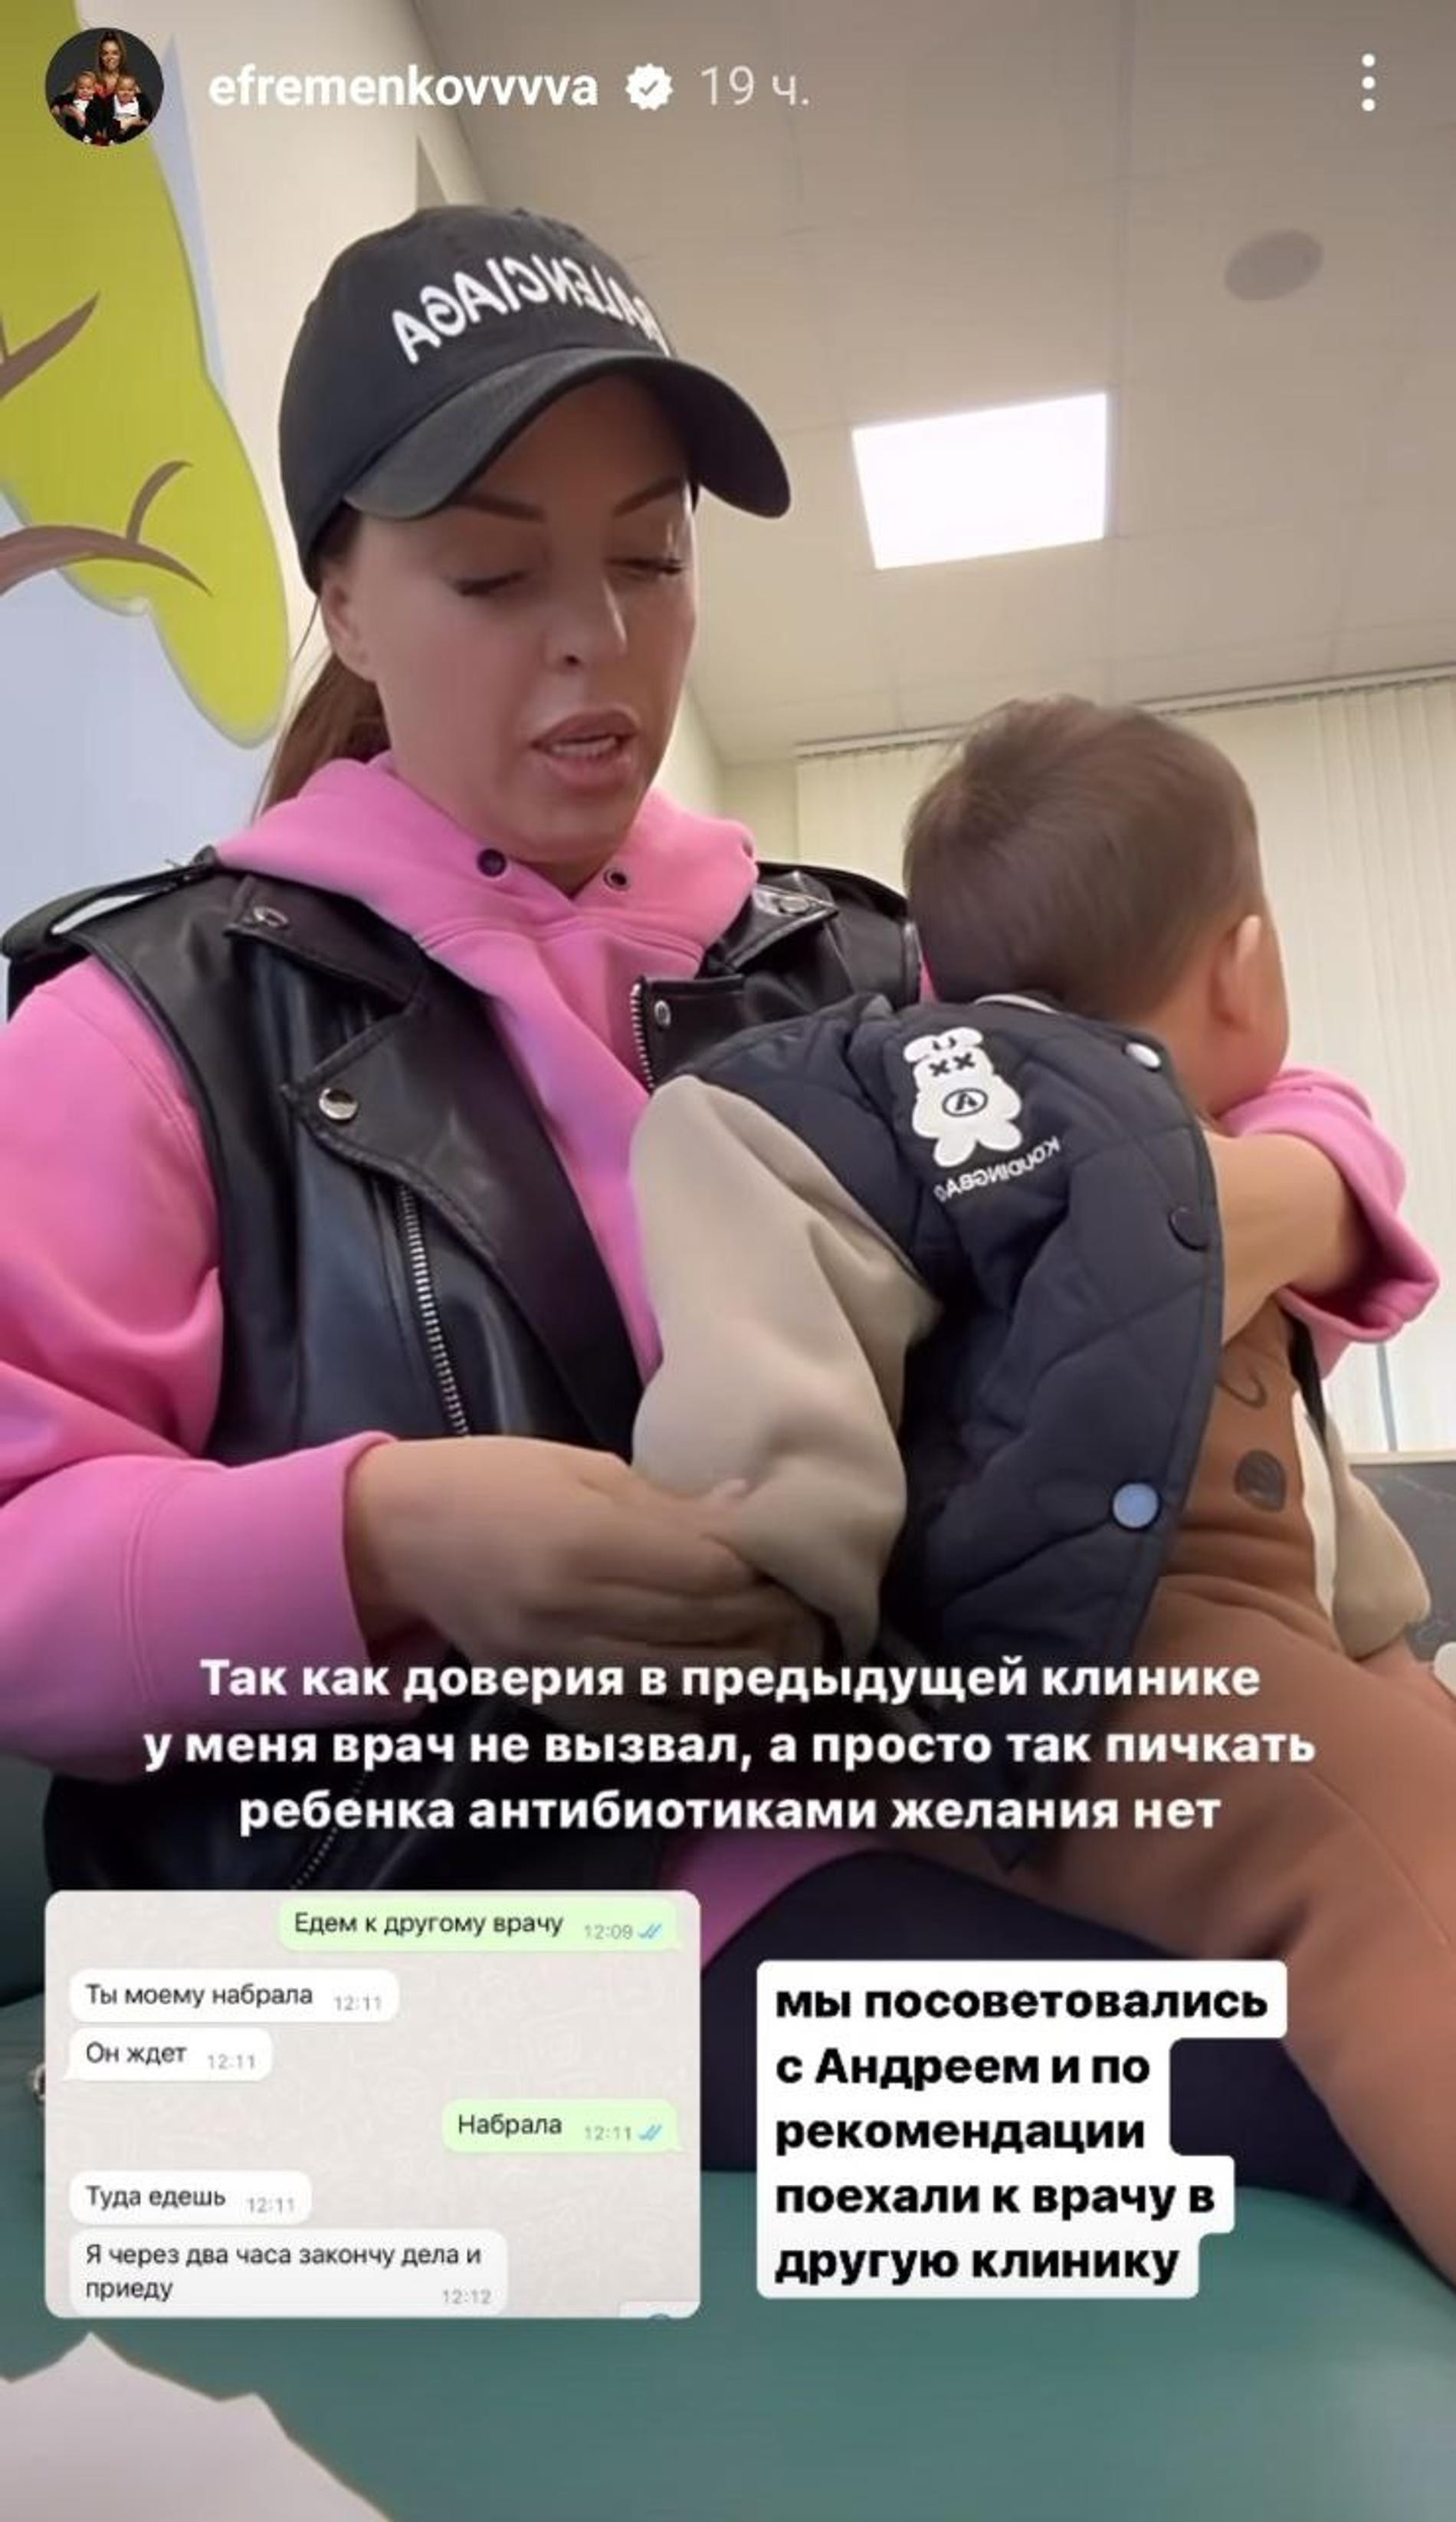 Юлия Ефременкова с сыном. Скриншот: Инстаграм* @efremenkovvvva